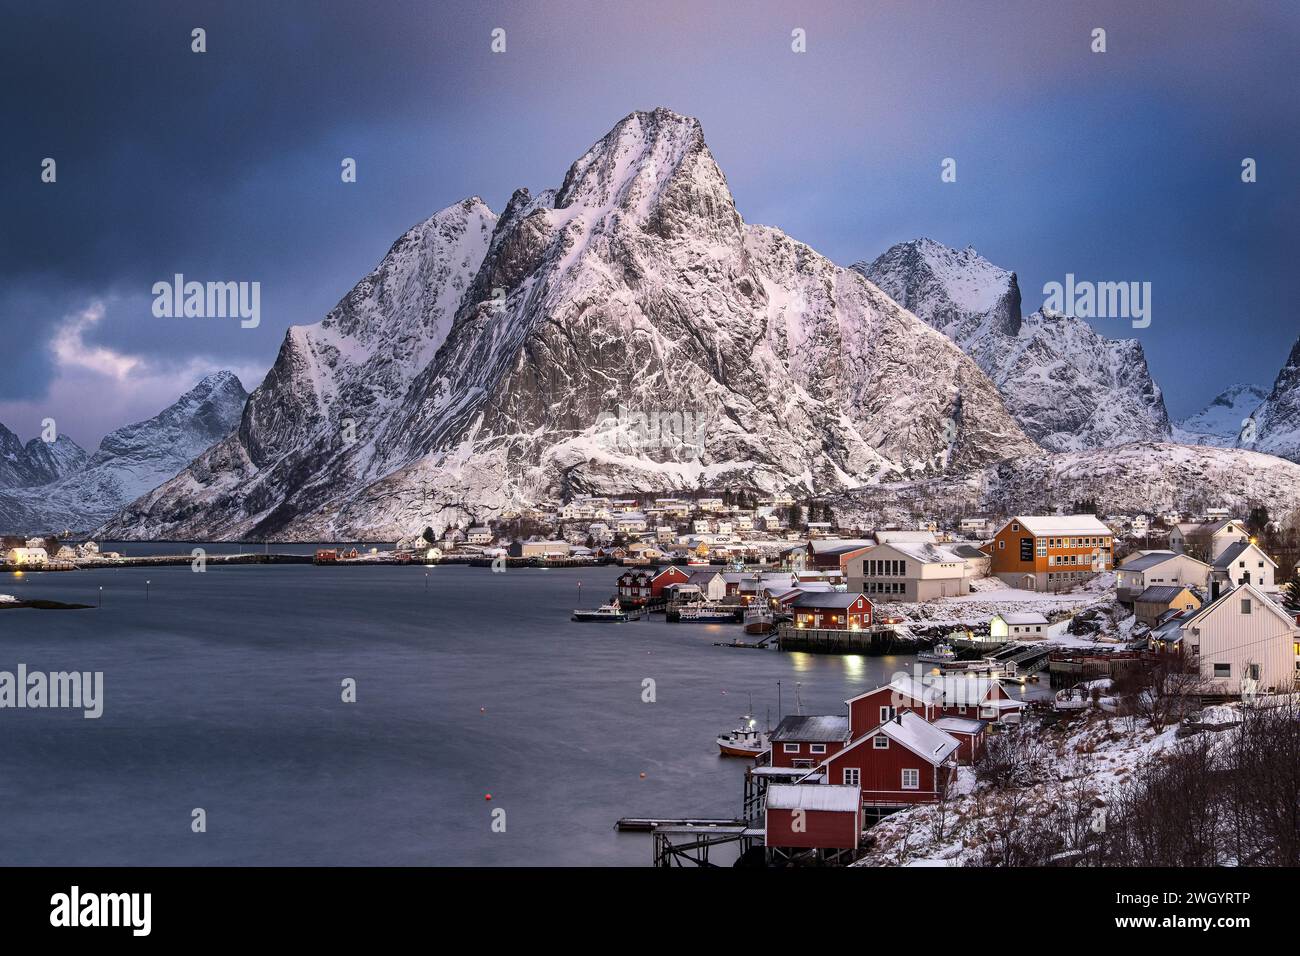 Il villaggio di pescatori di Reine e Olstinden all'alba in inverno, il comune di Moskenes, la contea di Nordland, le isole Lofoten, Norvegia Foto Stock